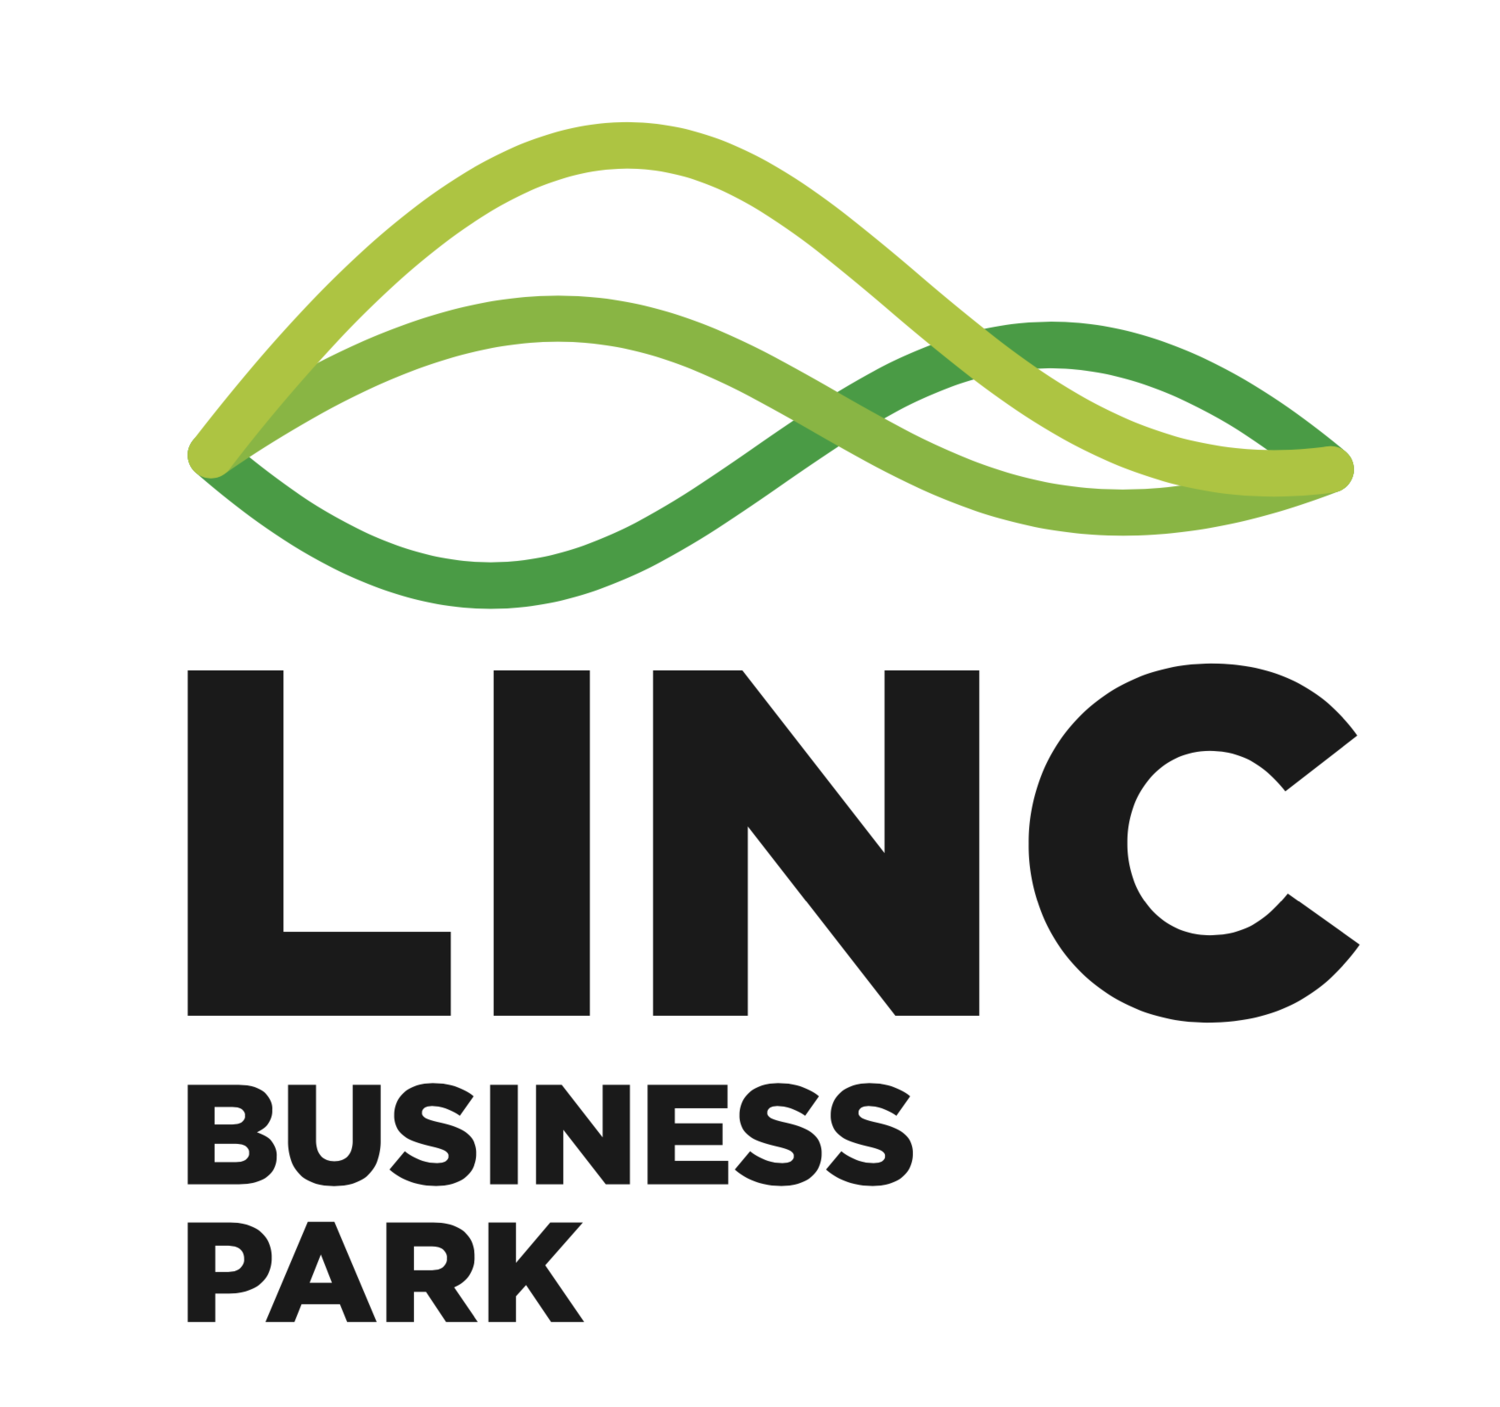 LINC Business Park